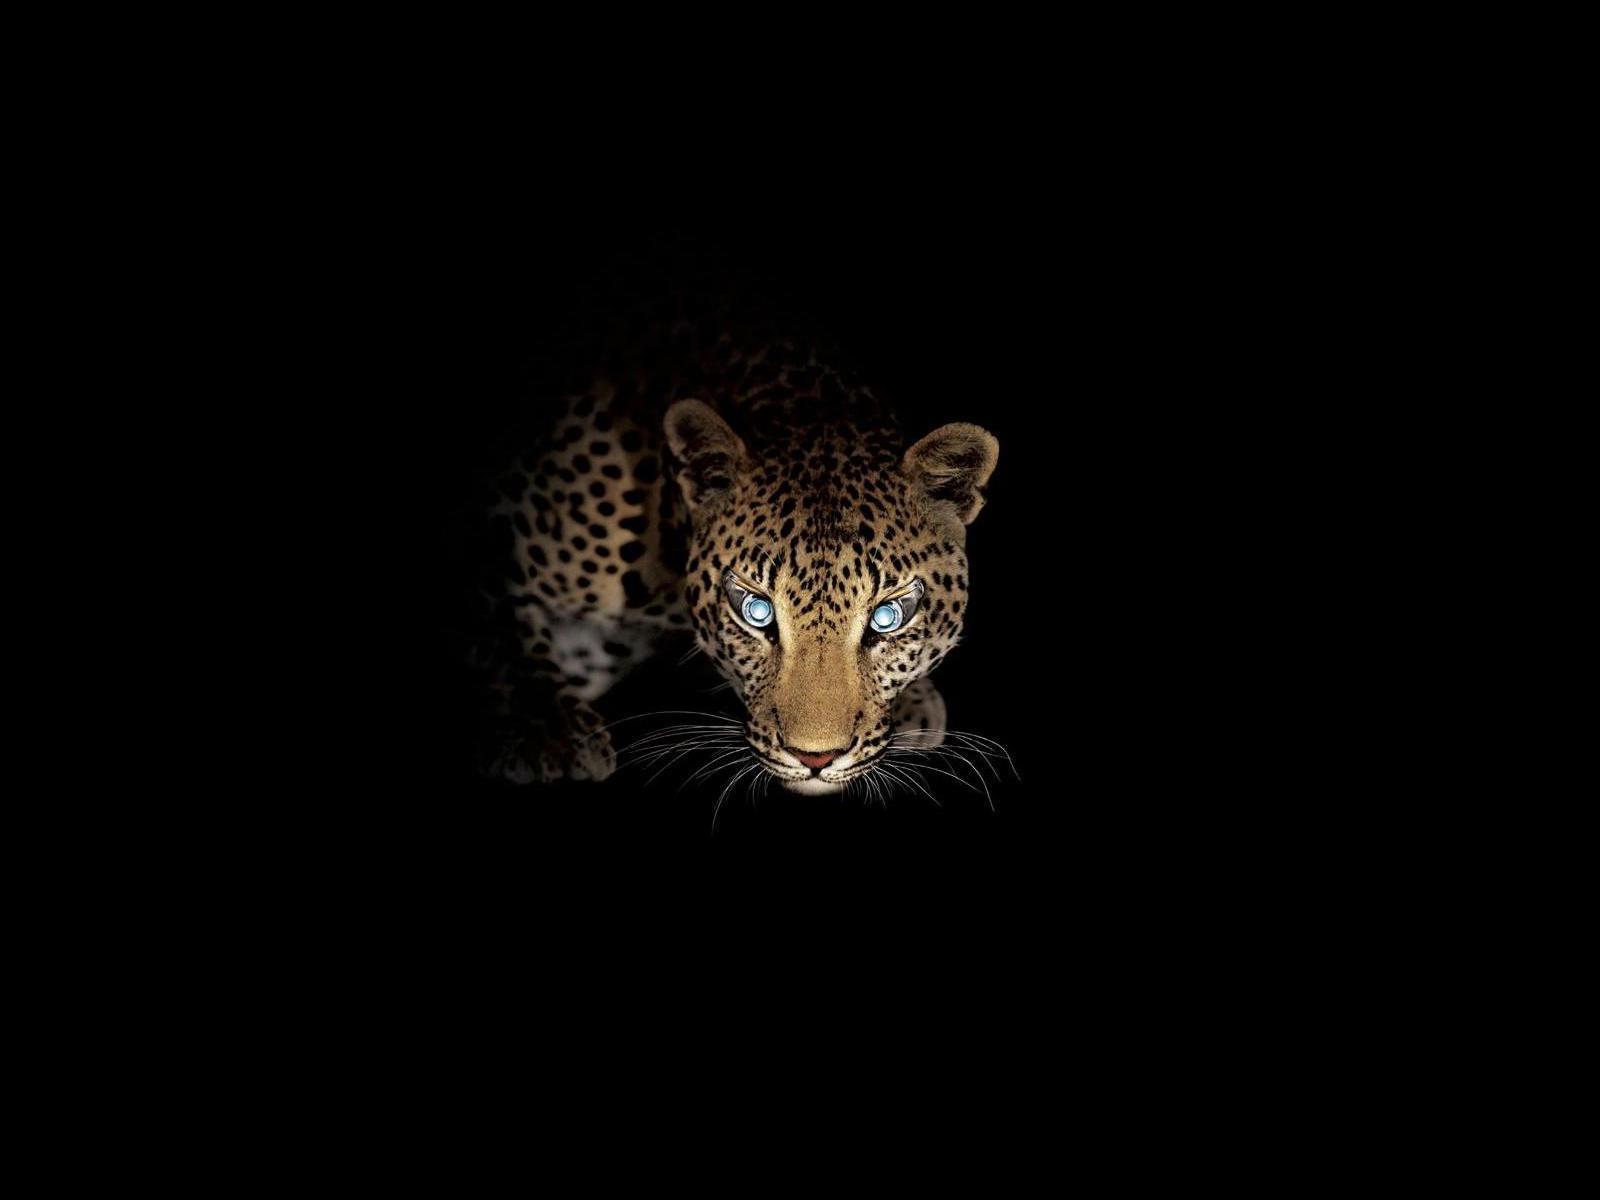 Скачать обои бесплатно Животные, Ягуар (Jaguar) картинка на рабочий стол ПК